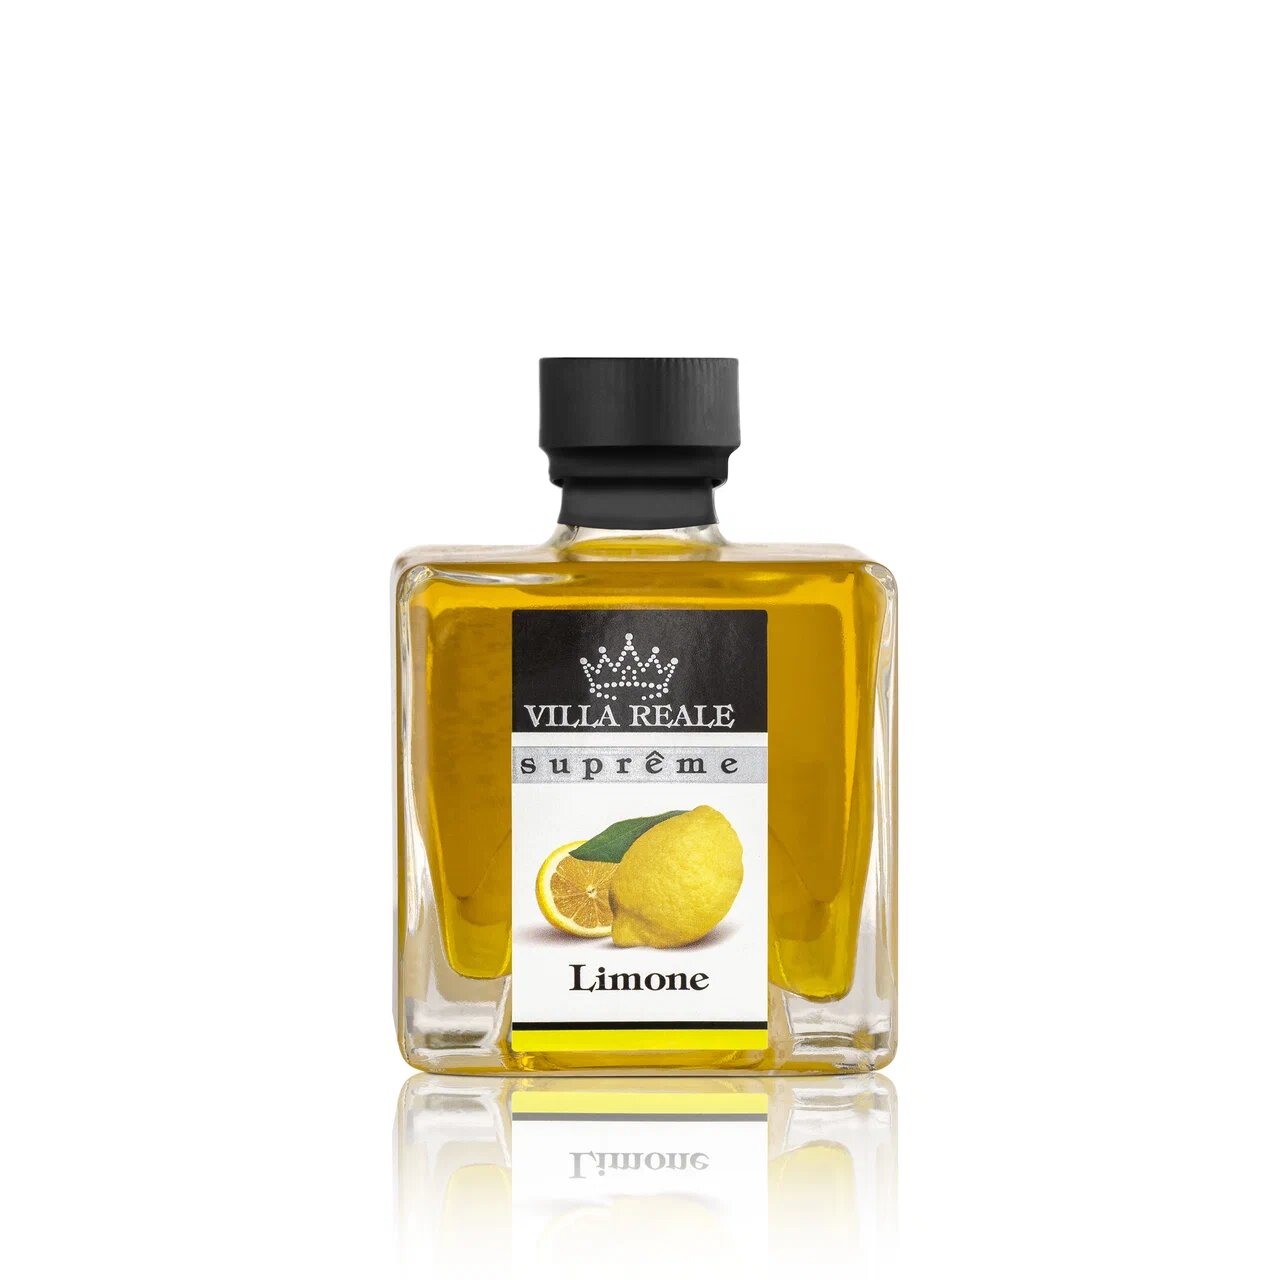 Aromatized Oil With Lemon